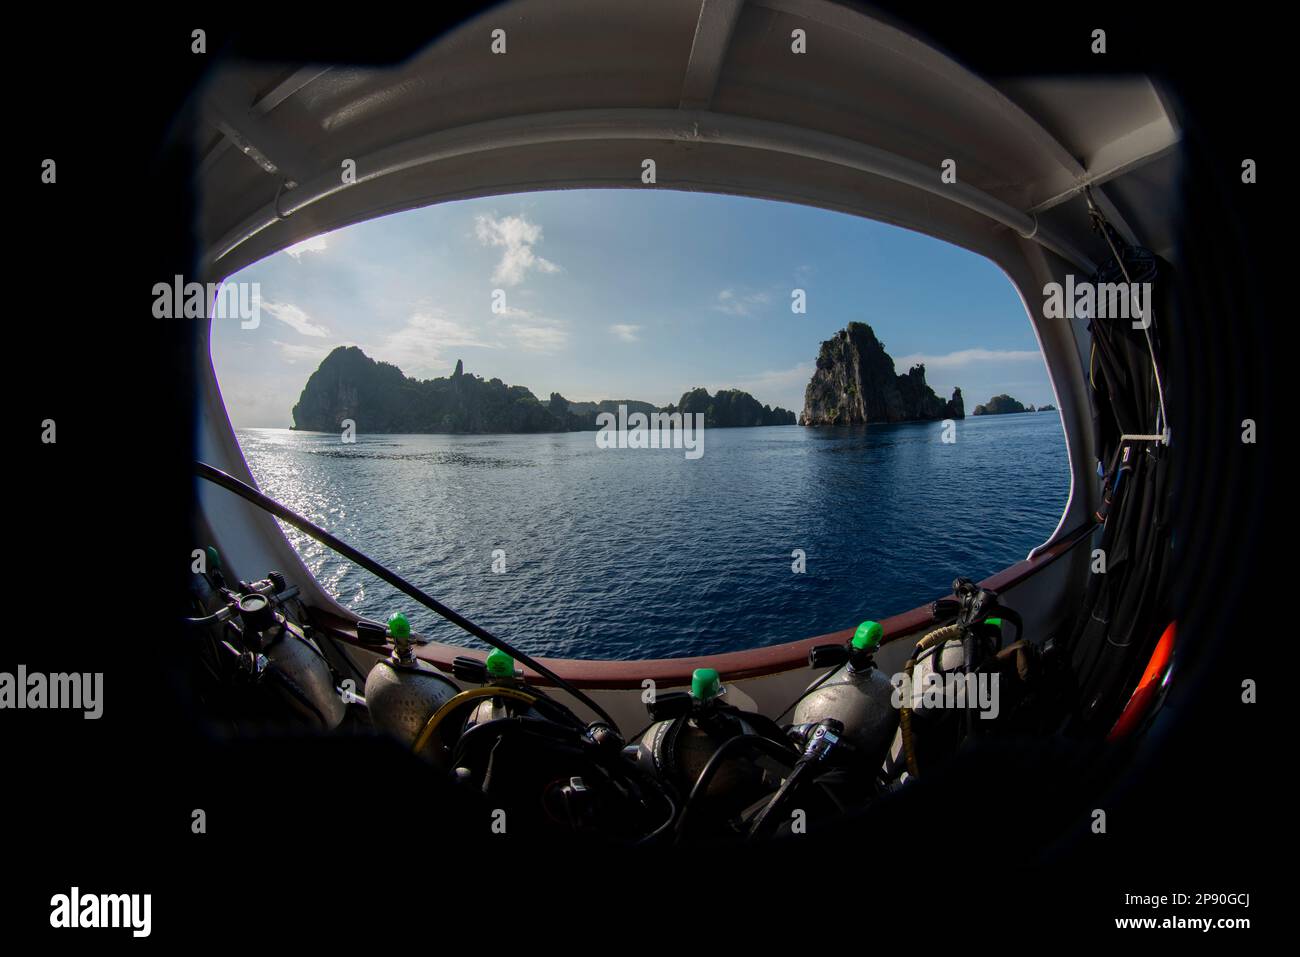 Kalksteininseln durch Bullauge auf Meerjungfrau-Liveboard-Boot (Eigentum freigegeben) von Tauchbecken, Raja Ampat, West Papua, Indonesien Stockfoto